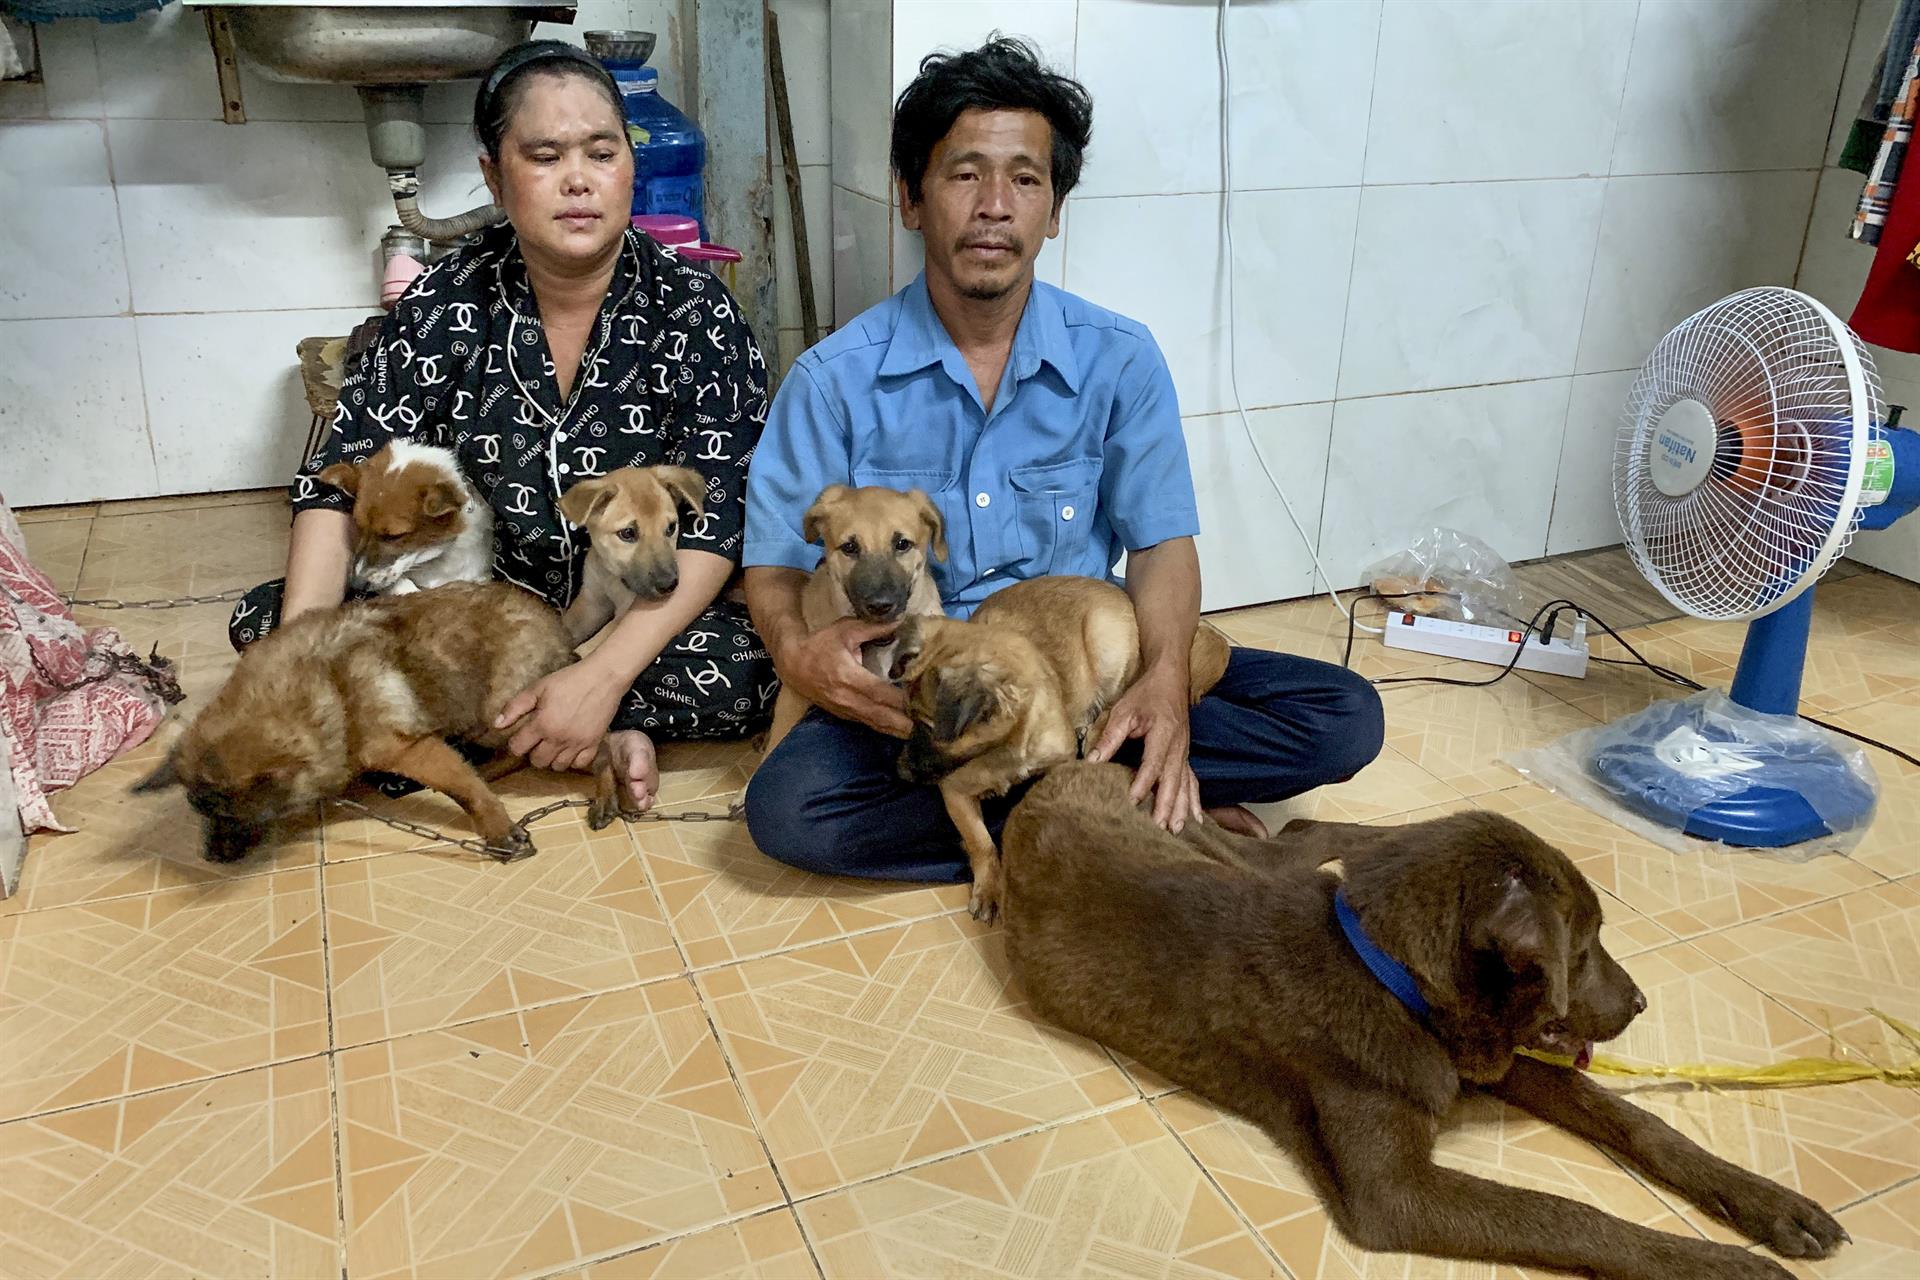 El trauma de la pareja que sacrificó a sus trece perros por Covid-19 (Foto y Video)